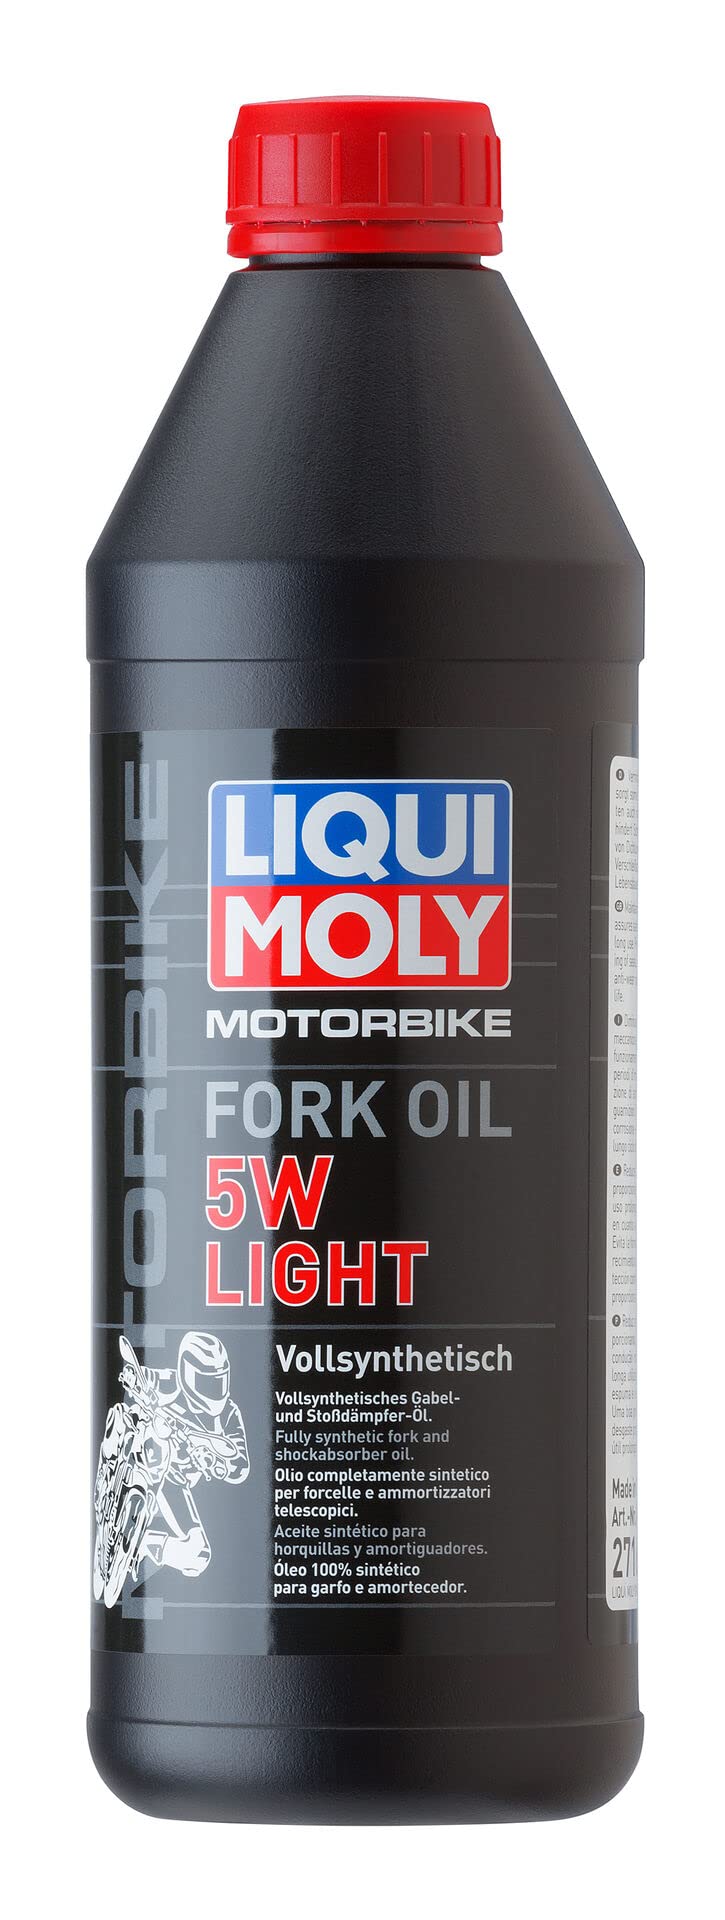 LIQUI MOLY Motorbike Fork Oil 5W light | 1 L | Motorrad Gabelöl | Art.-Nr.: 2716 von Liqui Moly